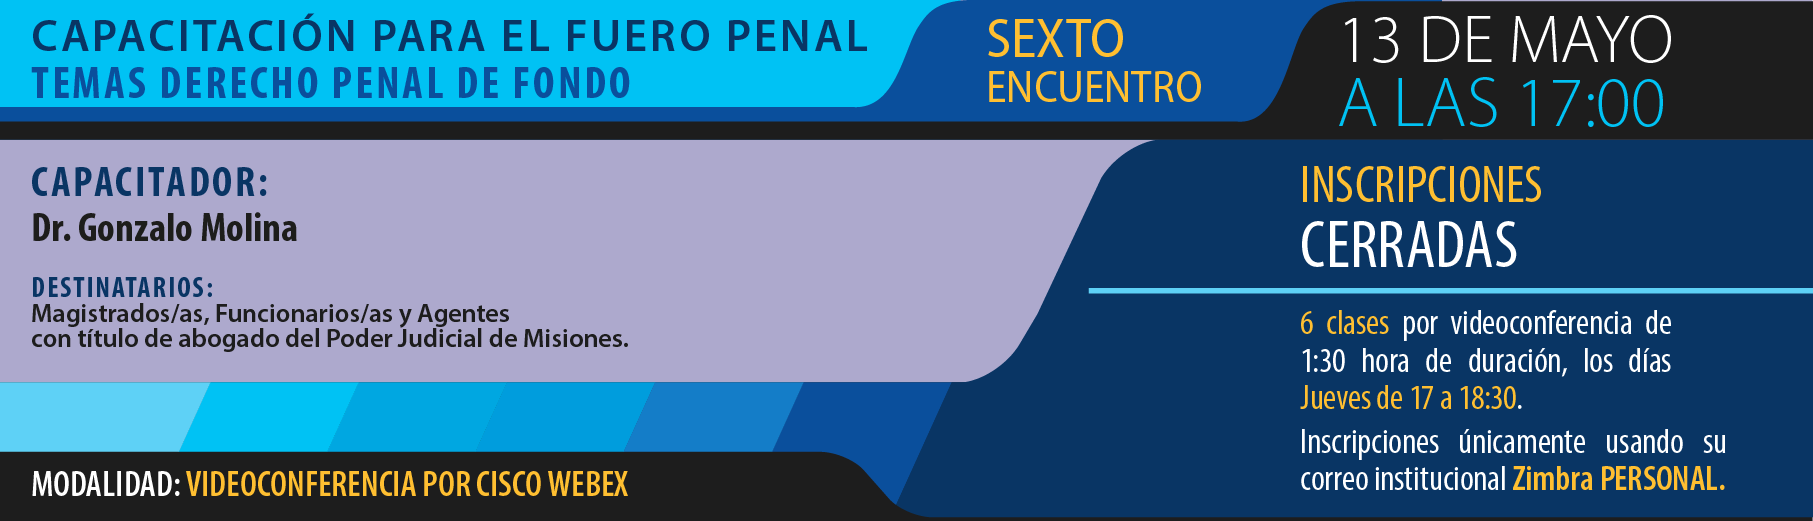 InC_P6_curso_cap_fuero_penal-01